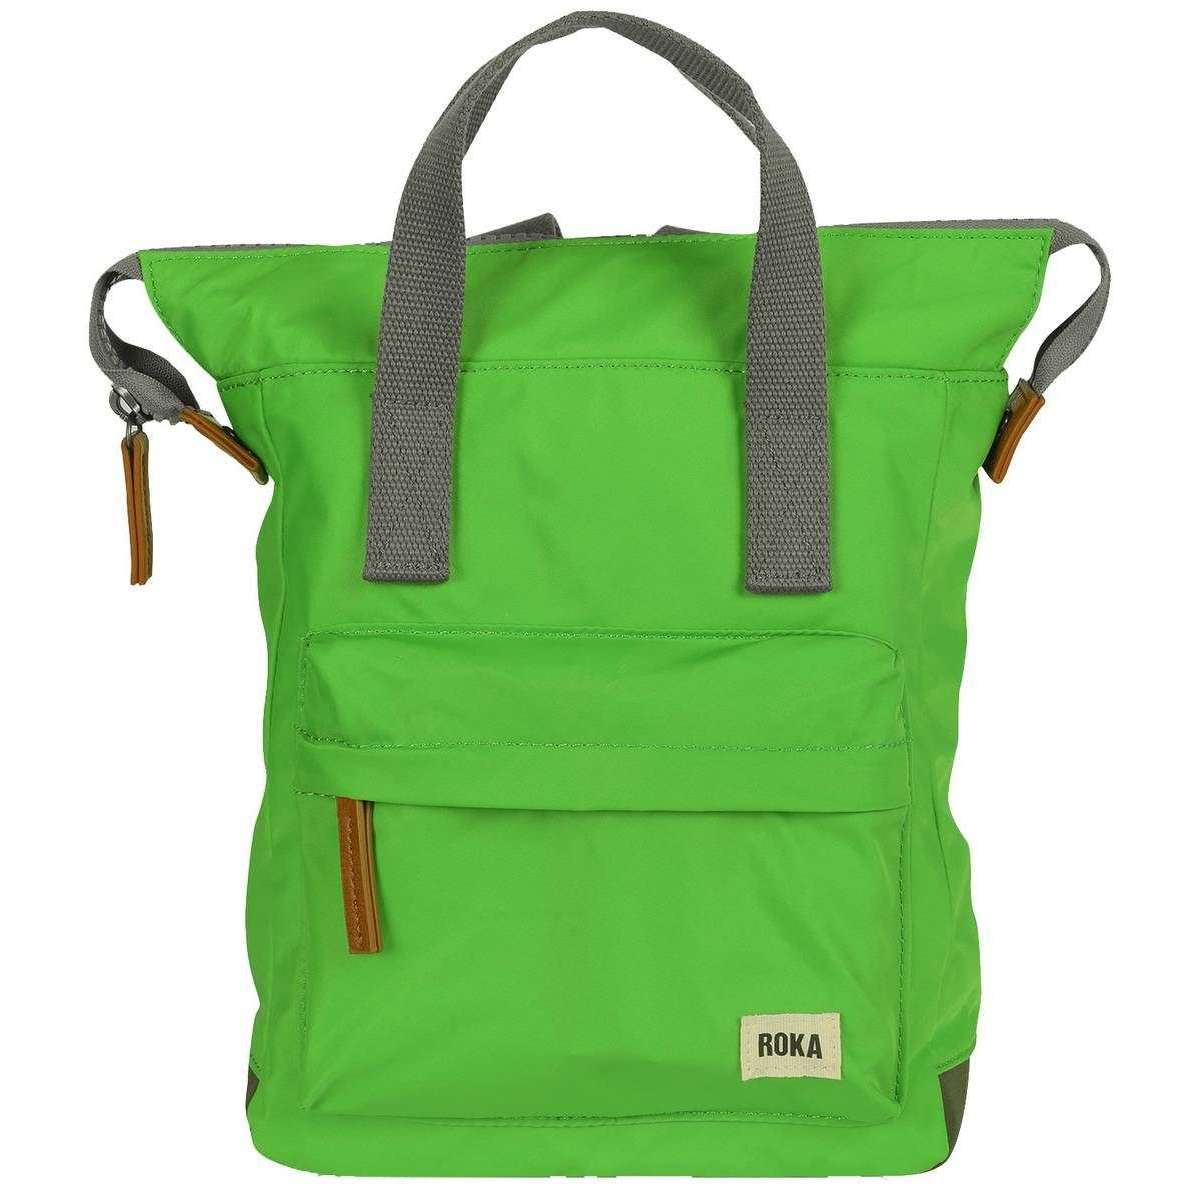 Roka Bantry B Small Sustainable Nylon Backpack - Kelly Green